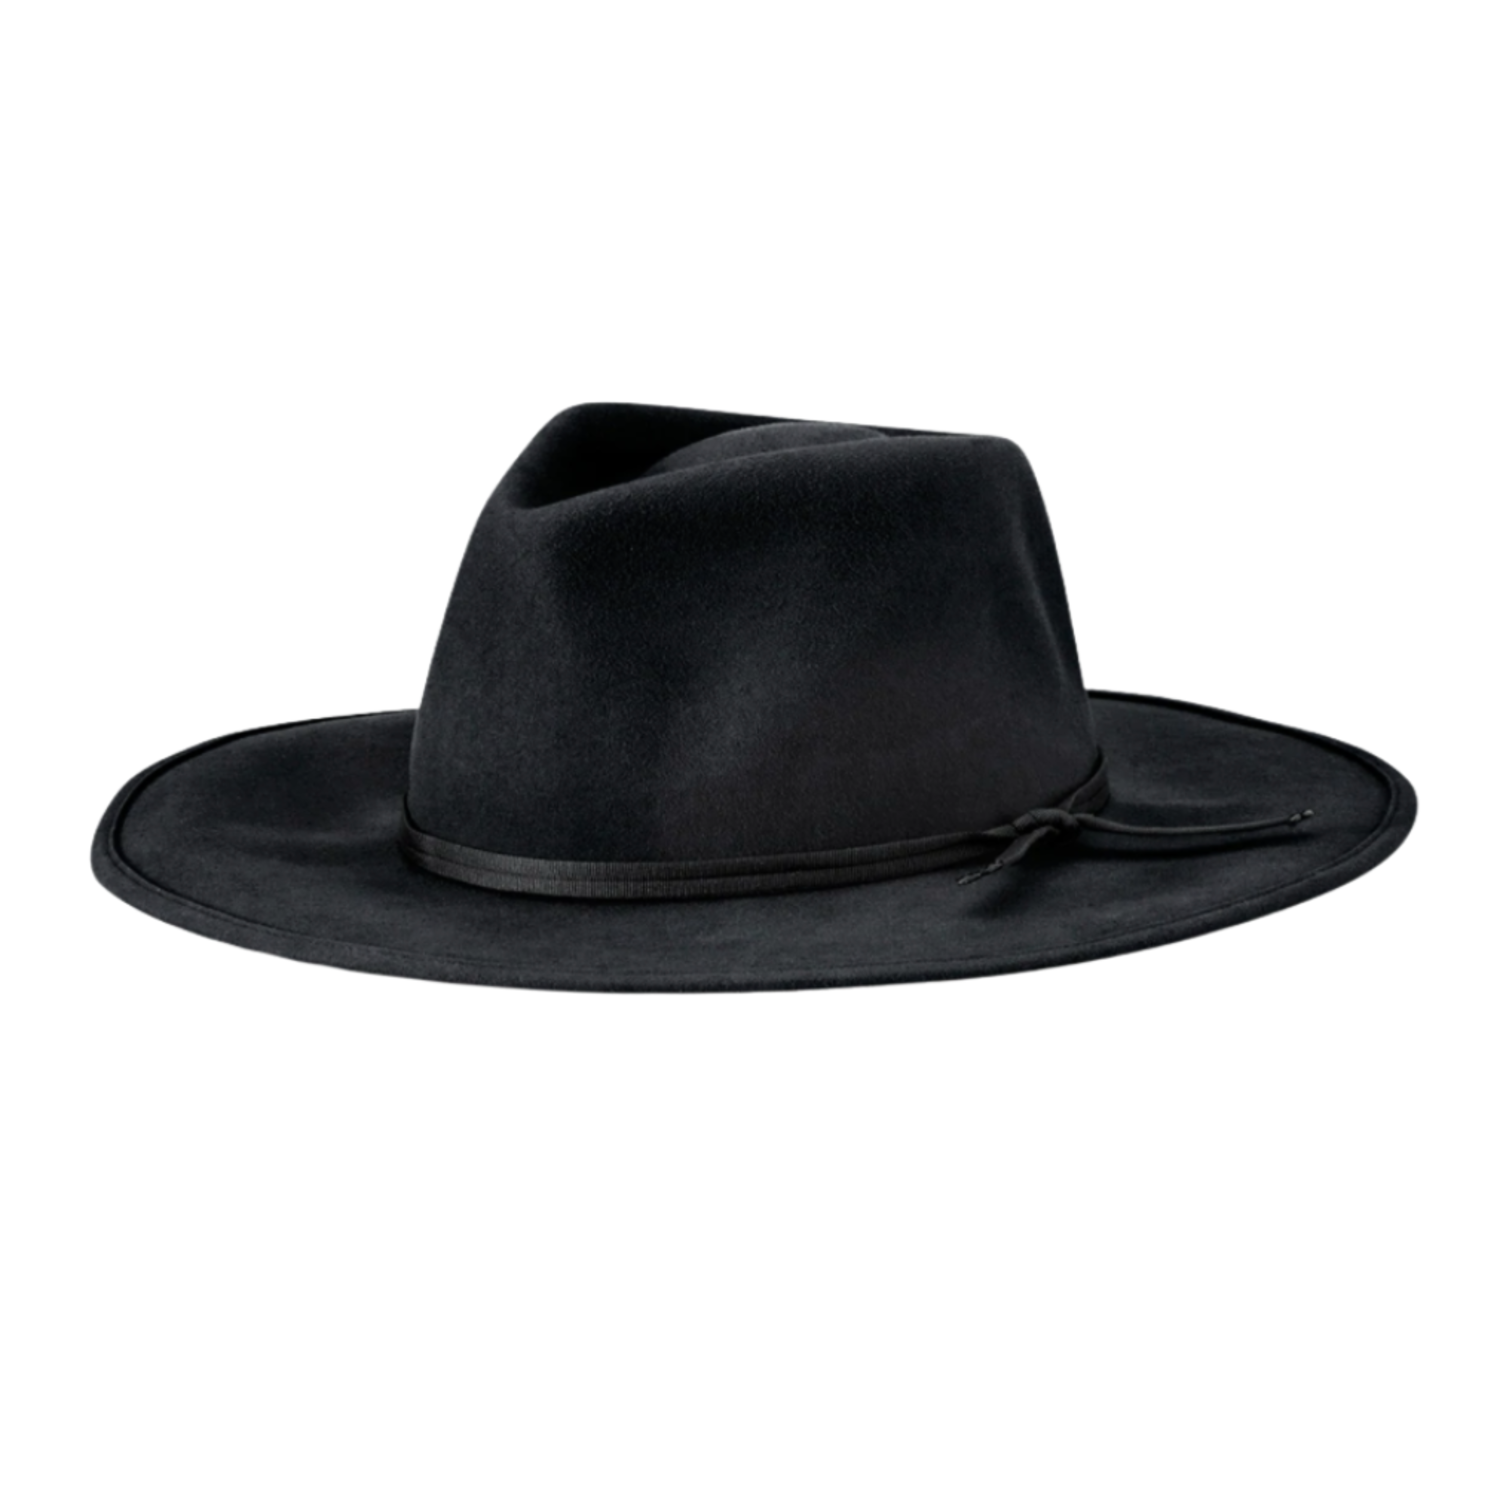 https://cdn.shoplightspeed.com/shops/635526/files/43038847/1500x4000x3/brixton-brixton-joanna-packable-hat.jpg